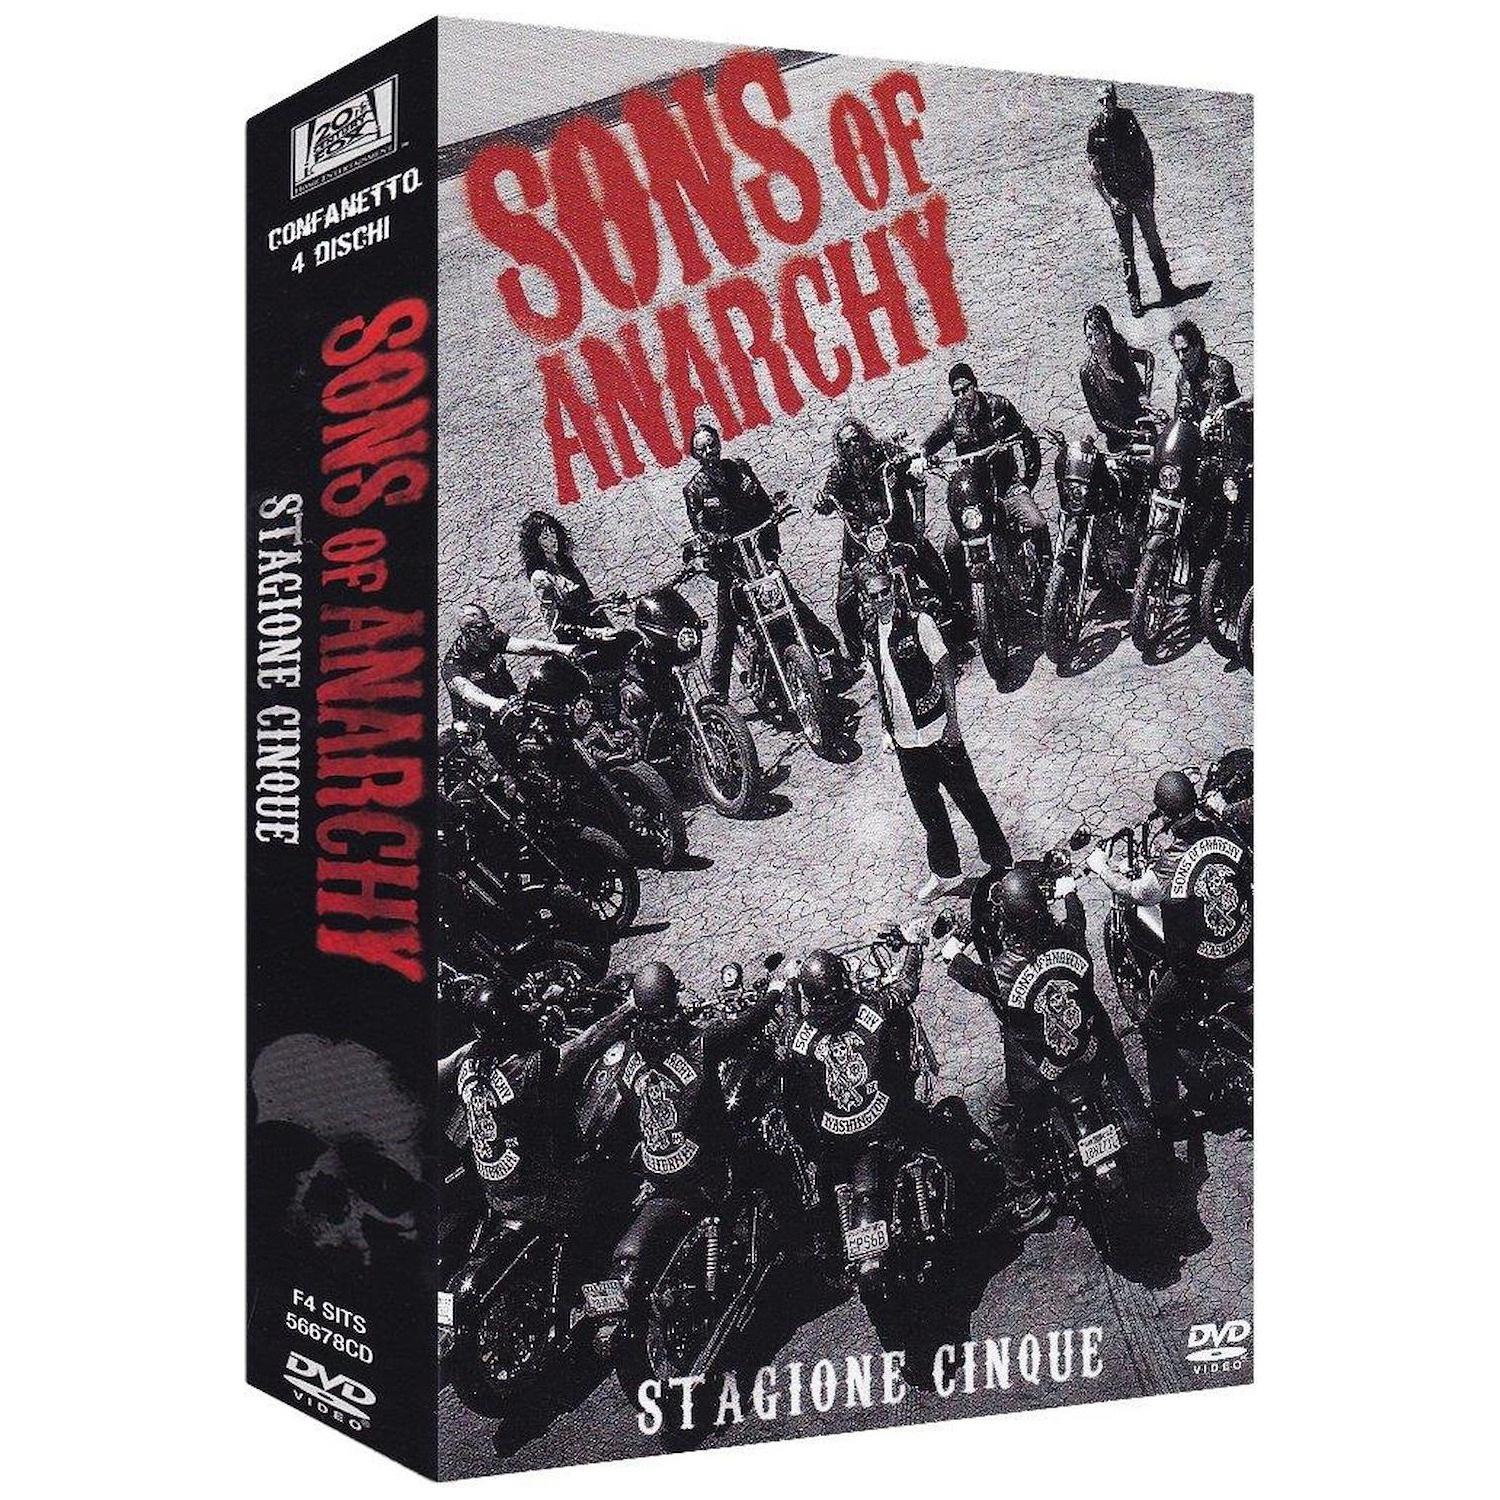 Immagine per Serie TV DVD Sons of Anarchy  stagione 5 da DIMOStore